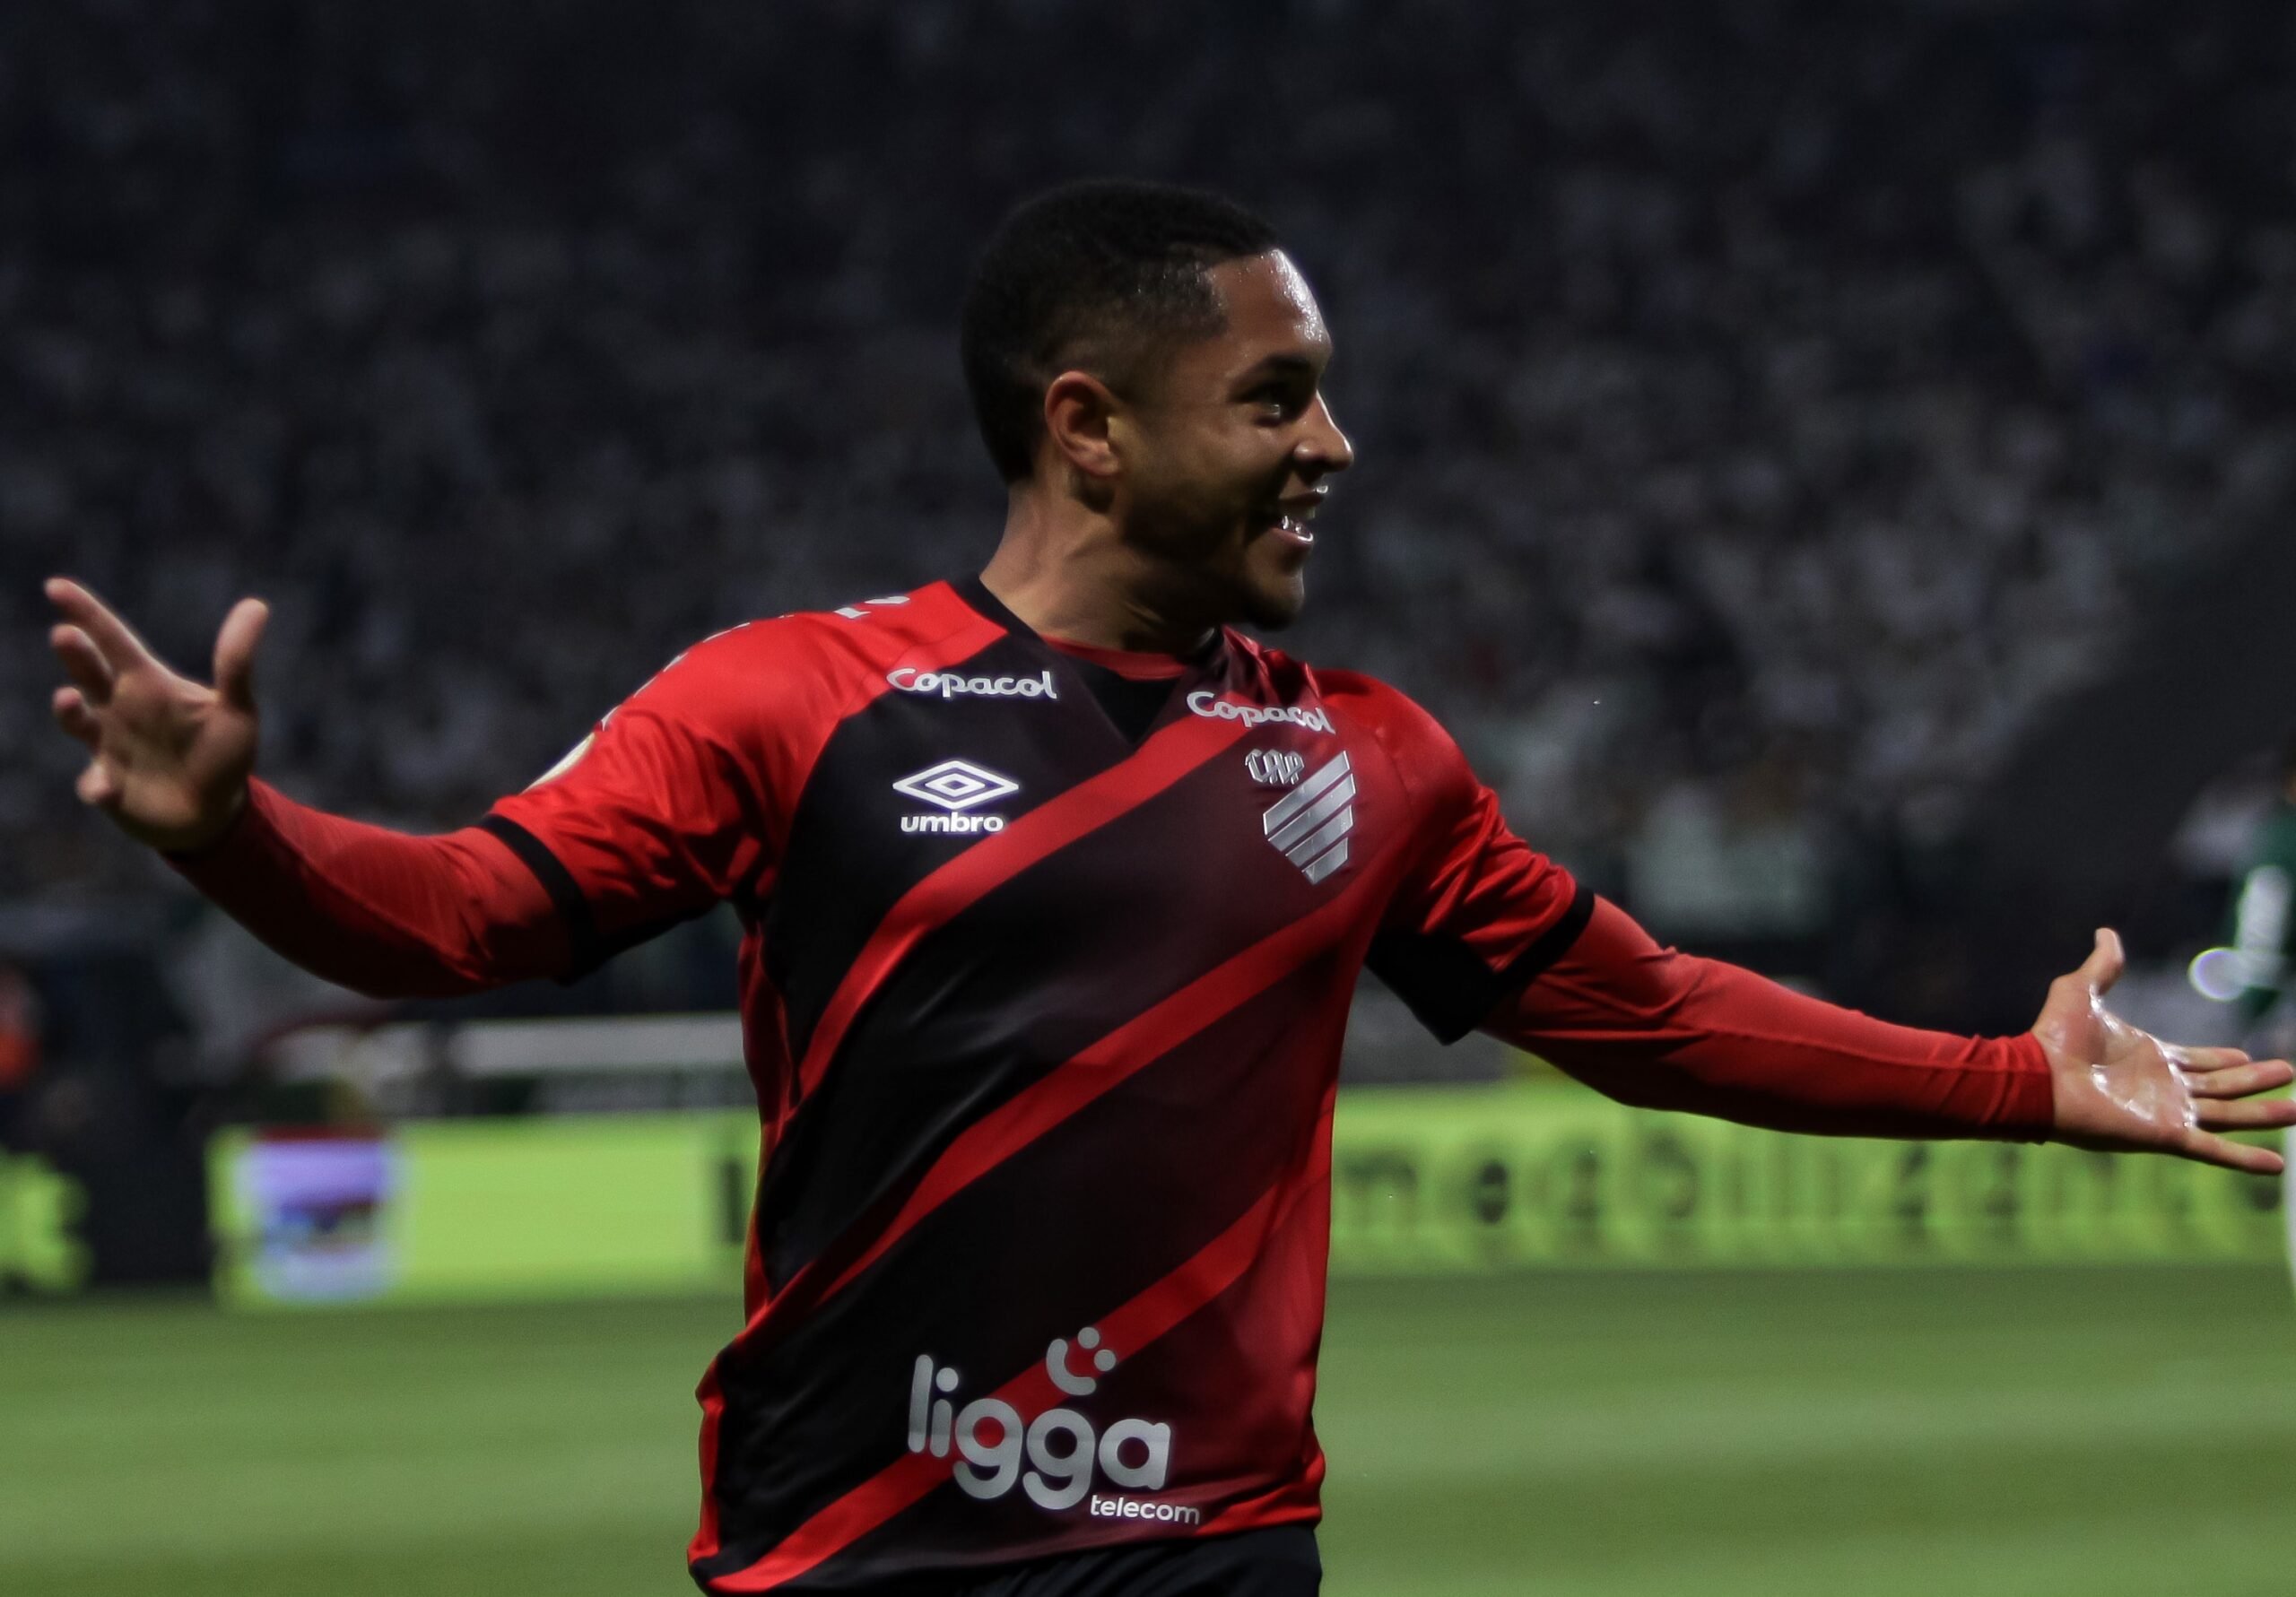 Neste sábado (26), o Athletico enfrentará o Flamengo na final da Libertadores de 2022. Você já sabe onde apostar no Athletico? Confira aqui!